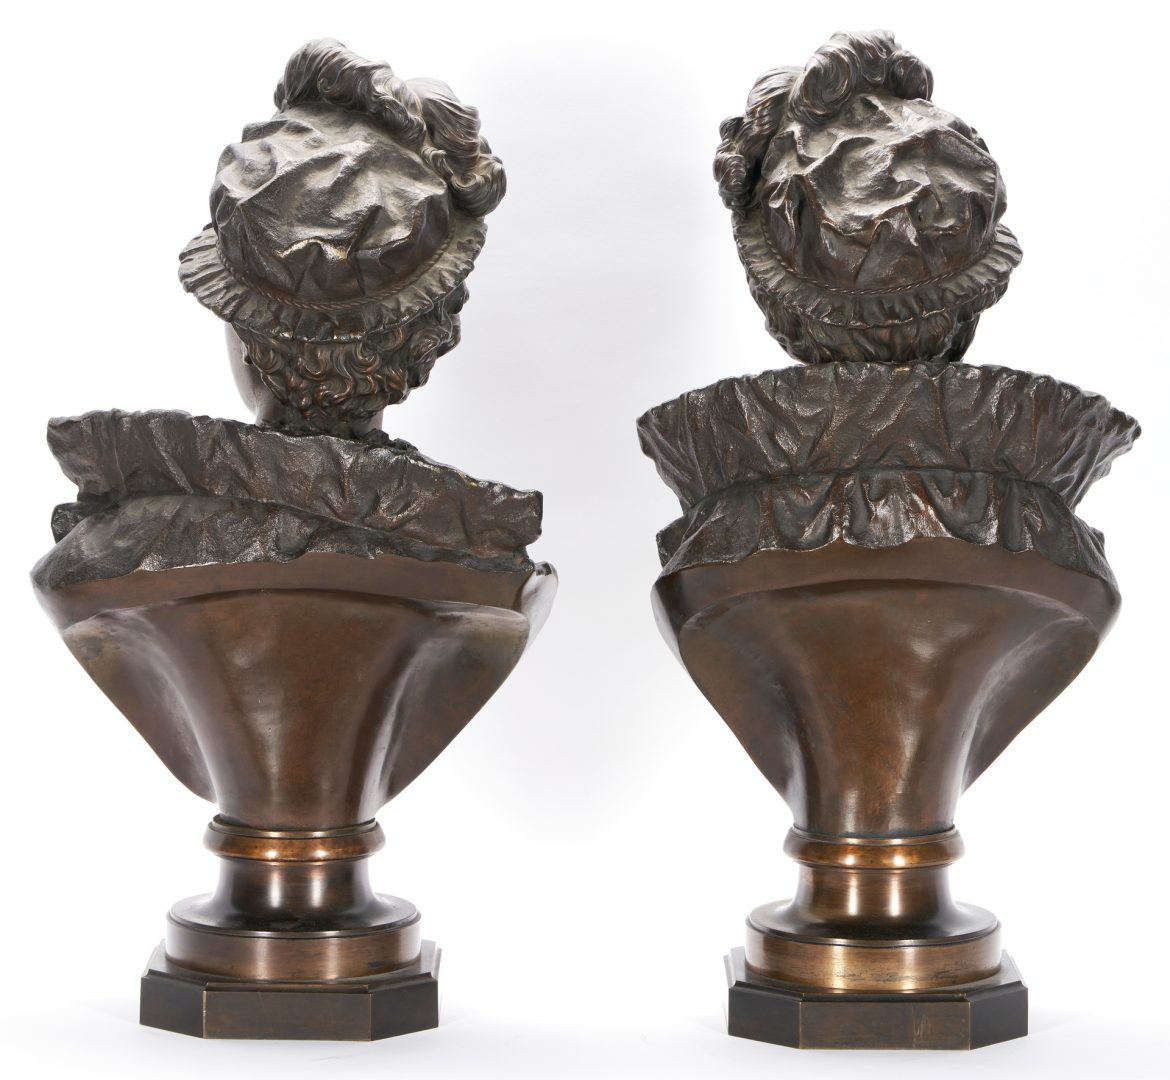 Lot 80: 2 Ernest Rancoulet Bronze Portrait Busts of Nobles